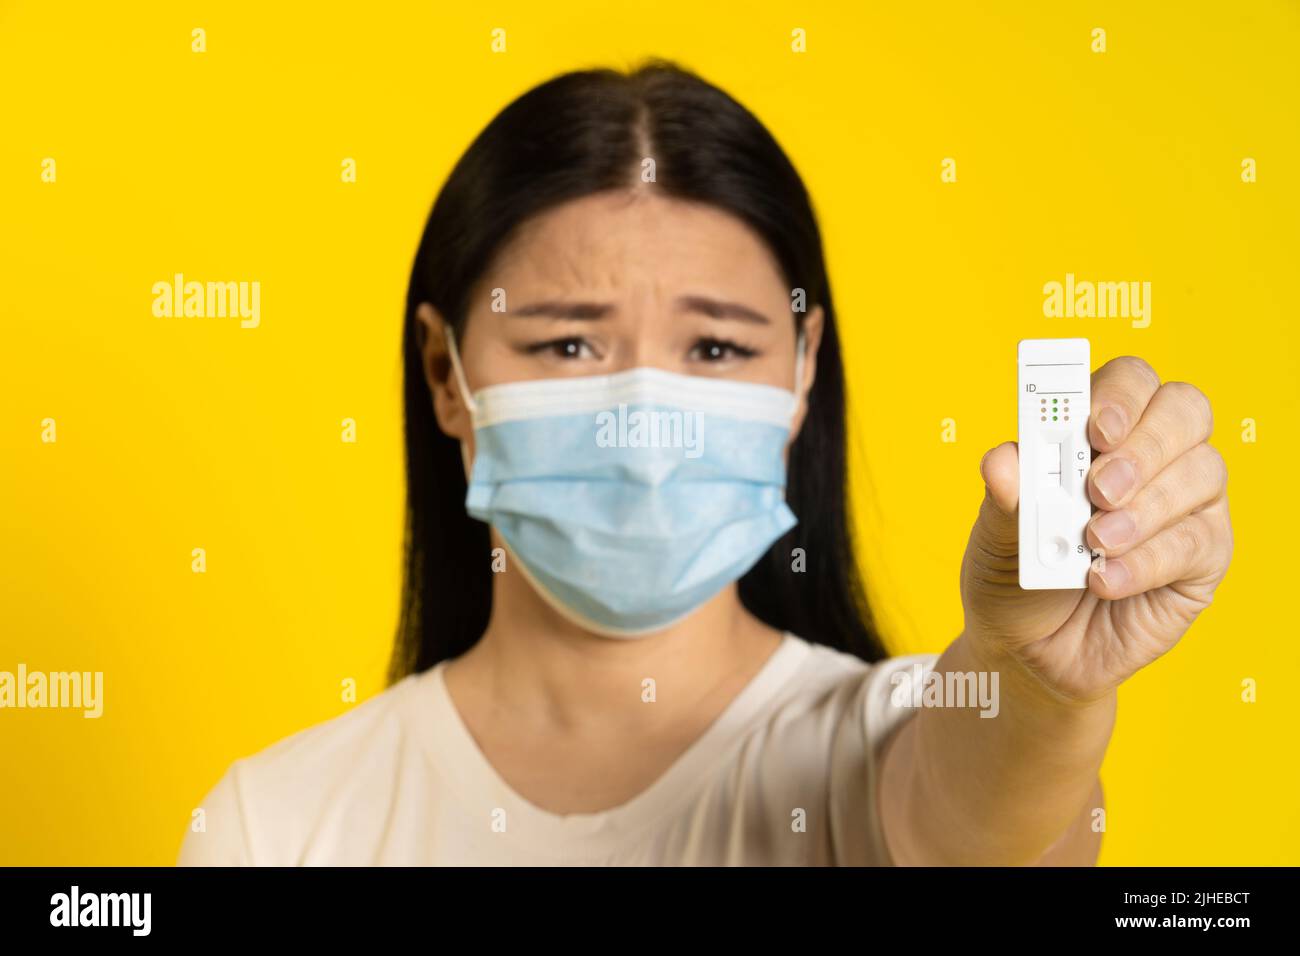 Asiatische Frau in medizinischen Gesichtsmaske und Test in der Hand traurig Blick auf Kamera isoliert auf gelbem Hintergrund. Pandemiekonzept, Affenpocken- oder Coronavirus, gesunder Lebensstil. Selektiver Fokus auf Test. Stockfoto